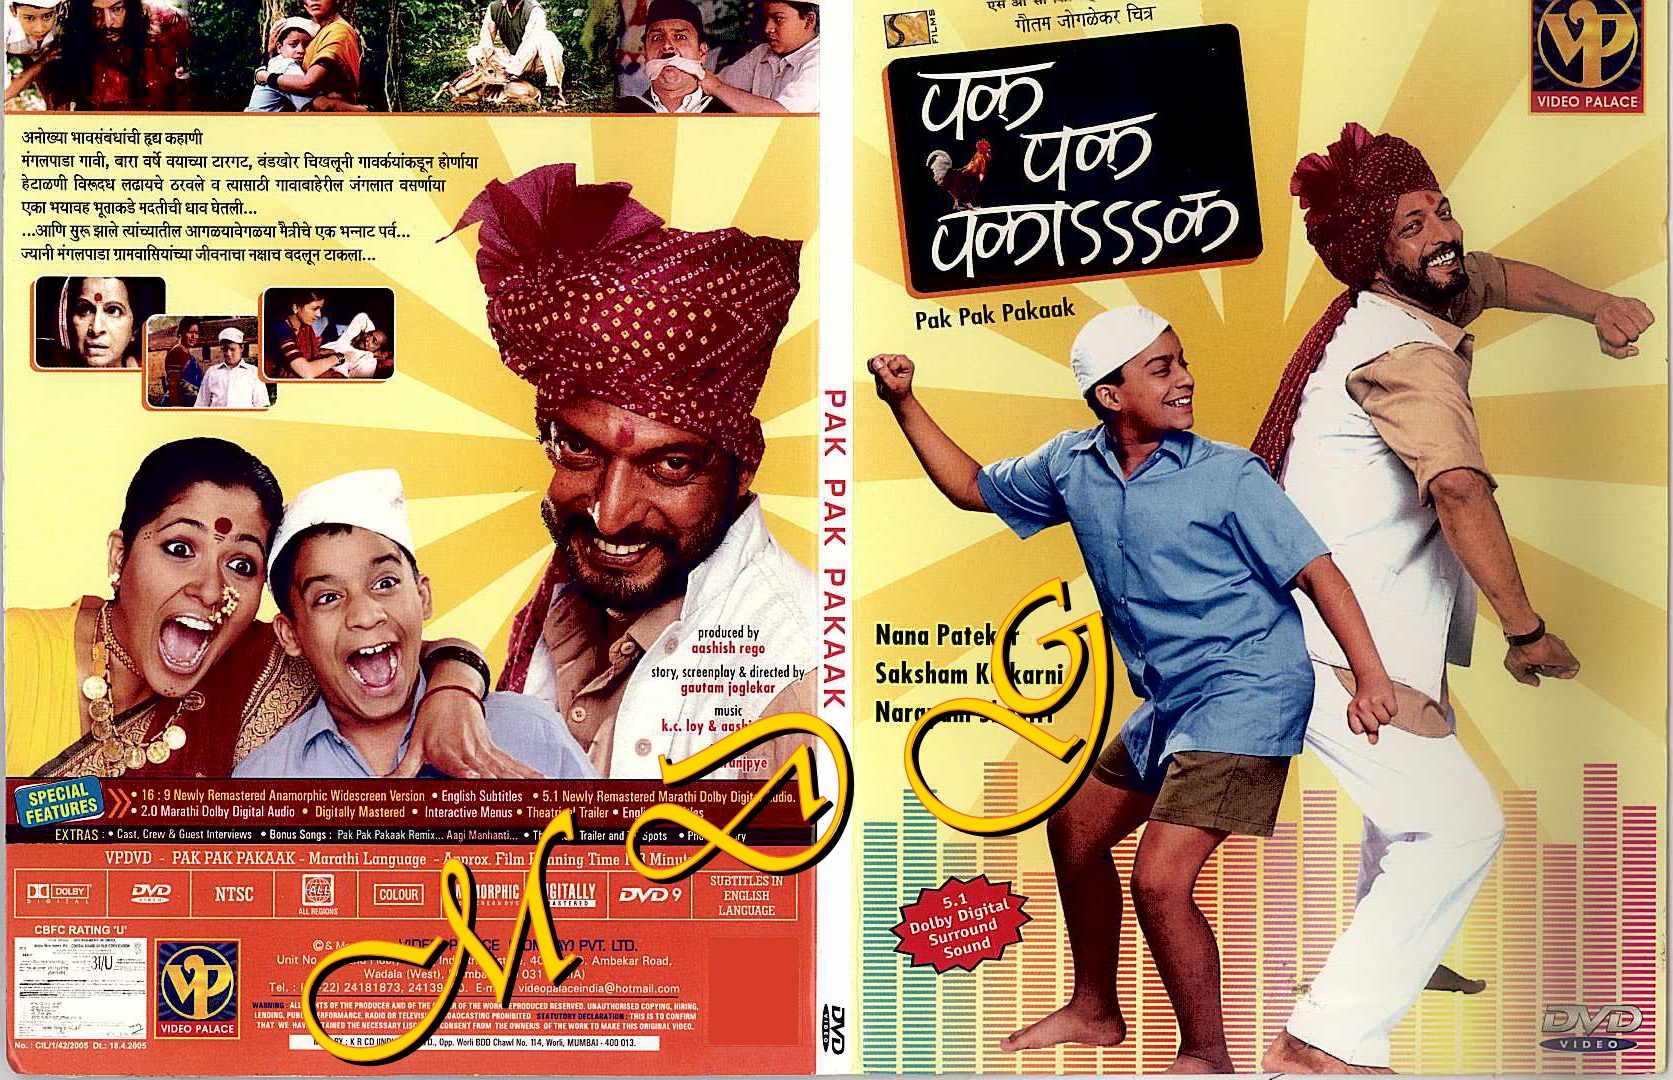 Pak Pak Pakak marathi movie mp3 songs free